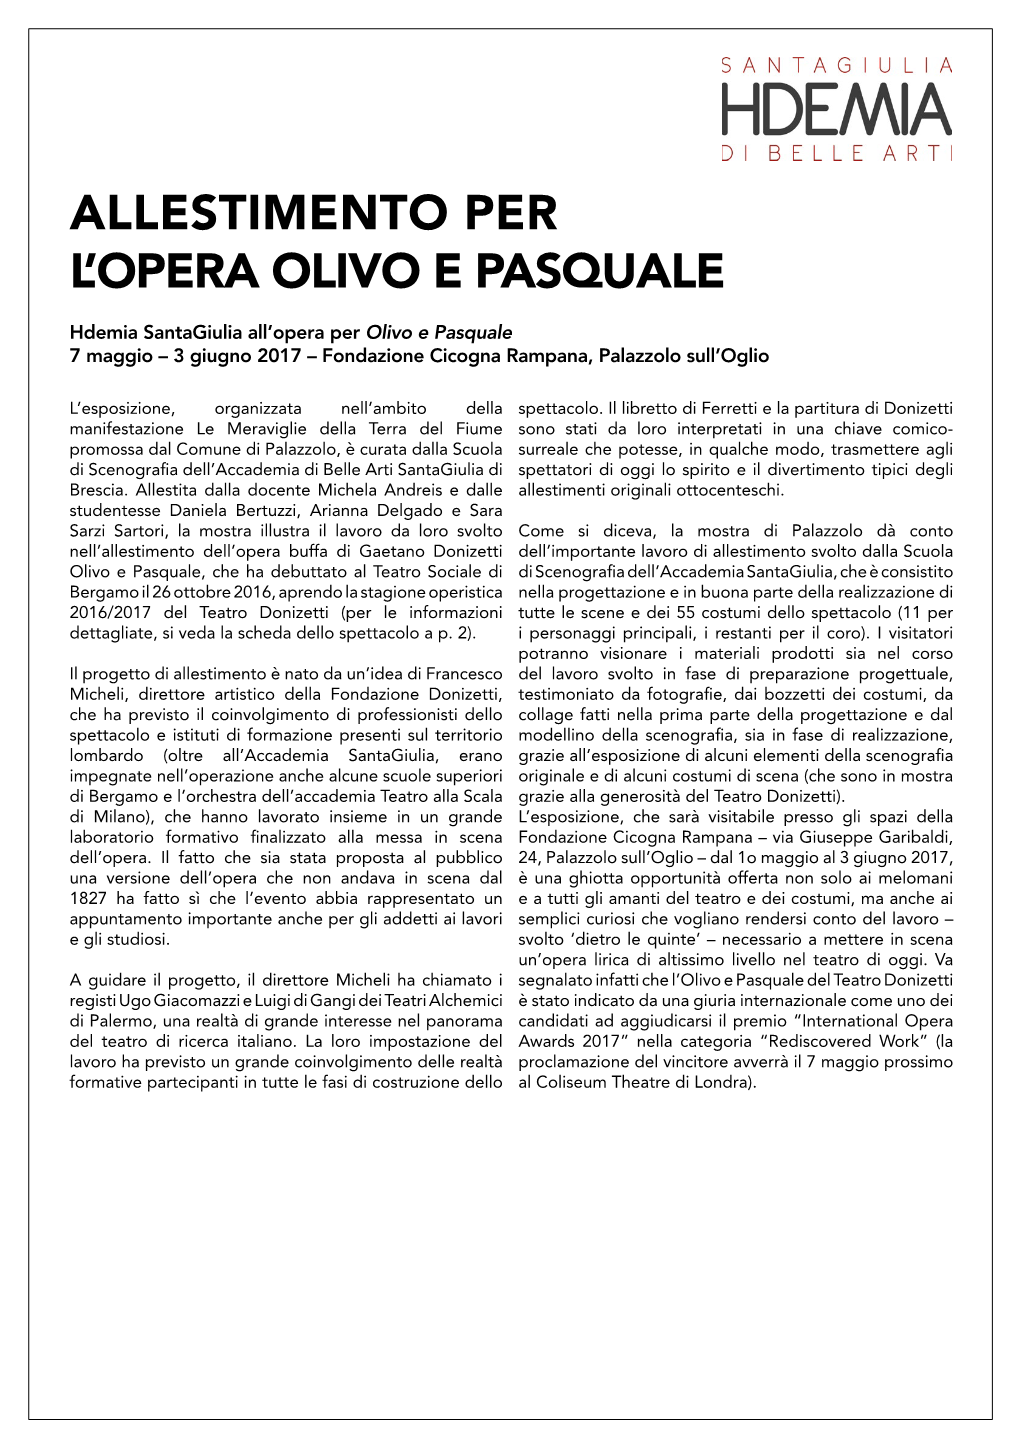 OLIVO E PASQUALE Hdemia Santagiulia All’Opera Per Olivo E Pasquale 7 Maggio – 3 Giugno 2017 – Fondazione Cicogna Rampana, Palazzolo Sull’Oglio